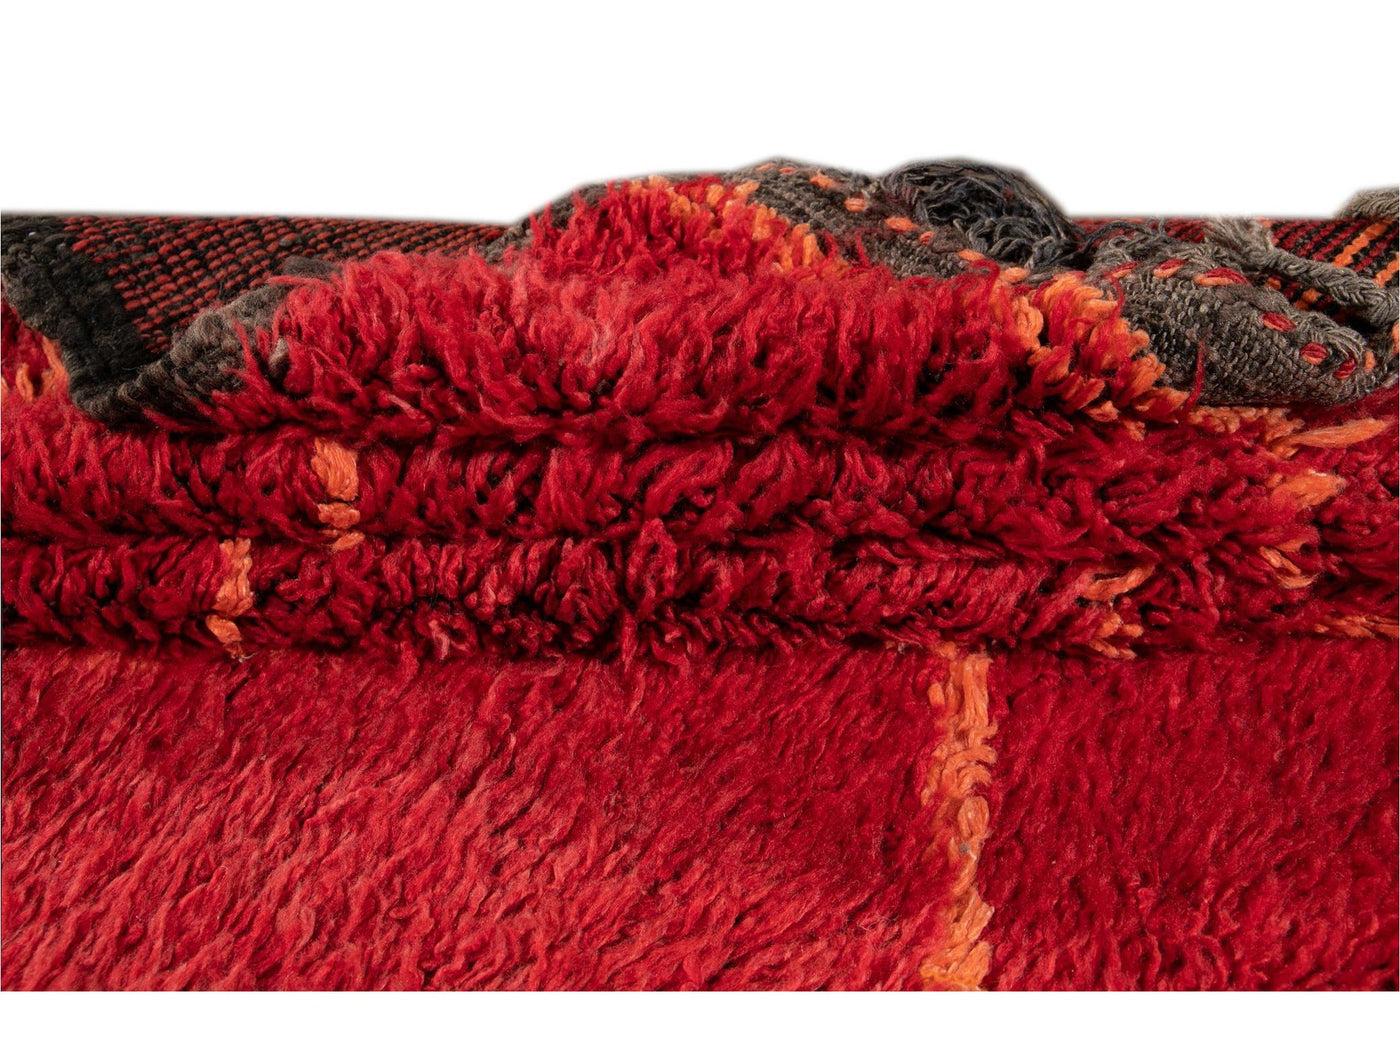 Vintage Red Tribal Moroccan Wool Rug, 6 x 9